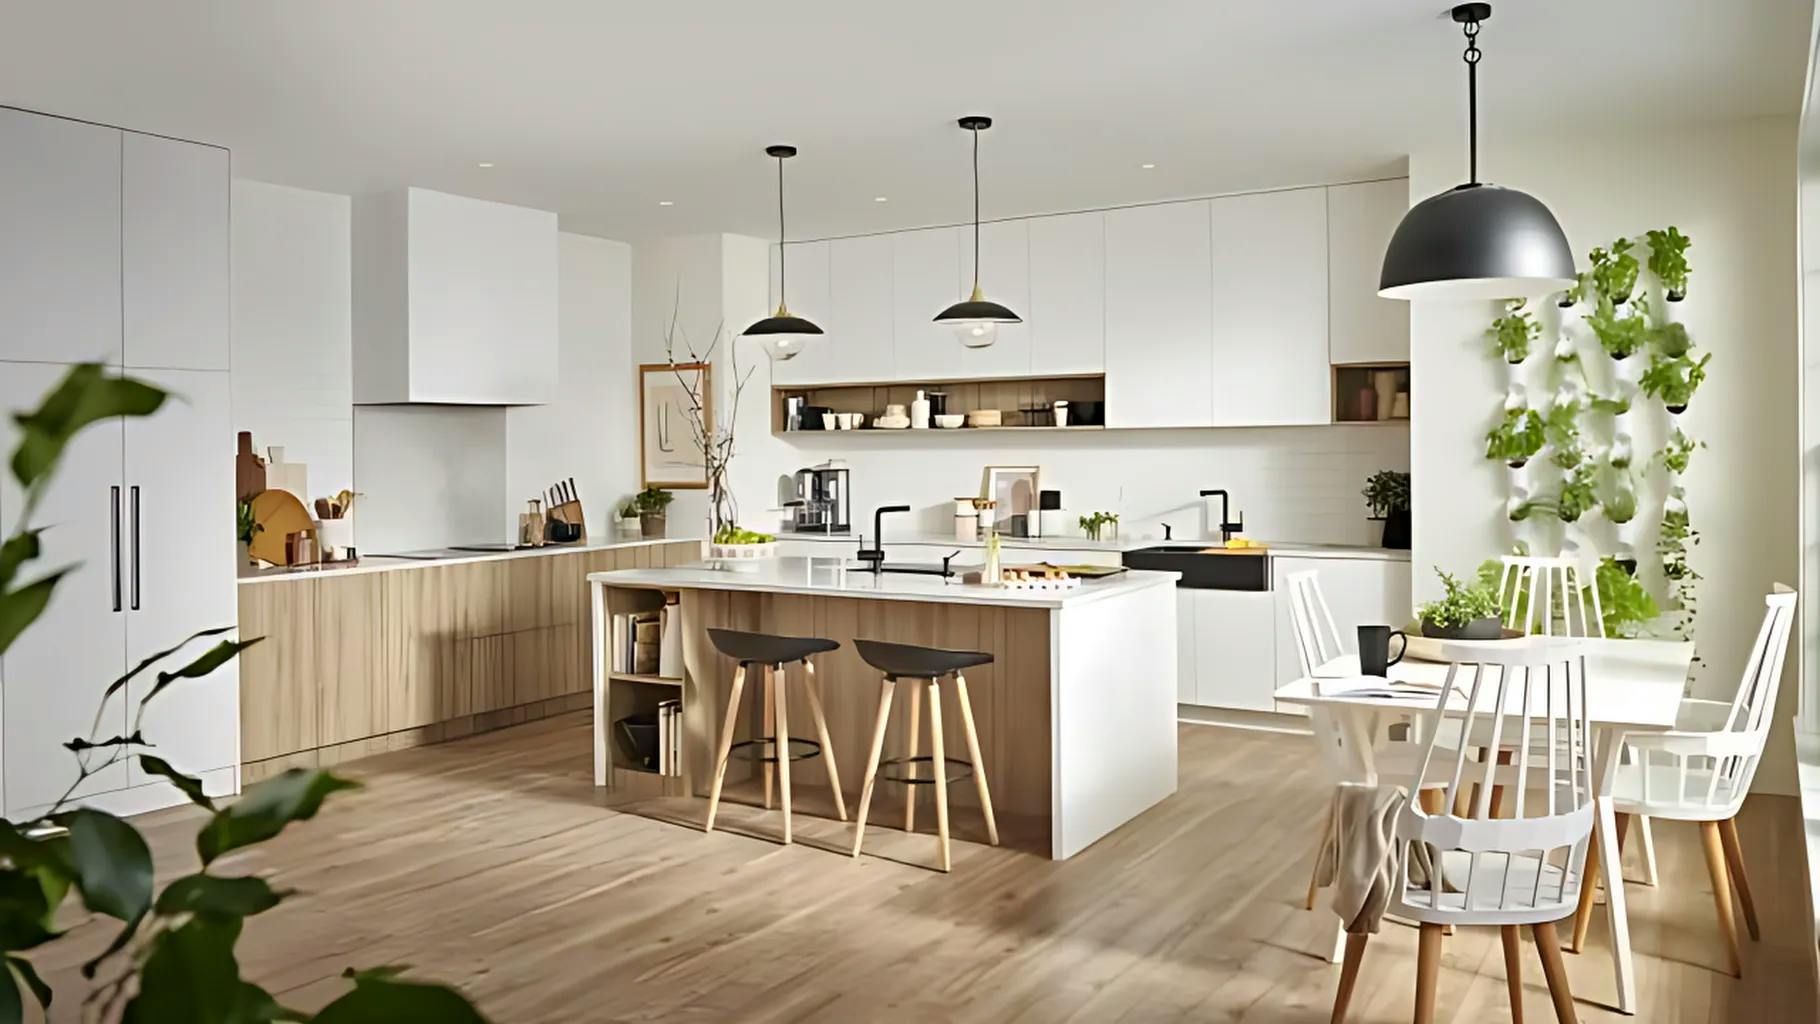 1-scandinavian-kitchen---header-image-640w-360h_enhanced.jpeg